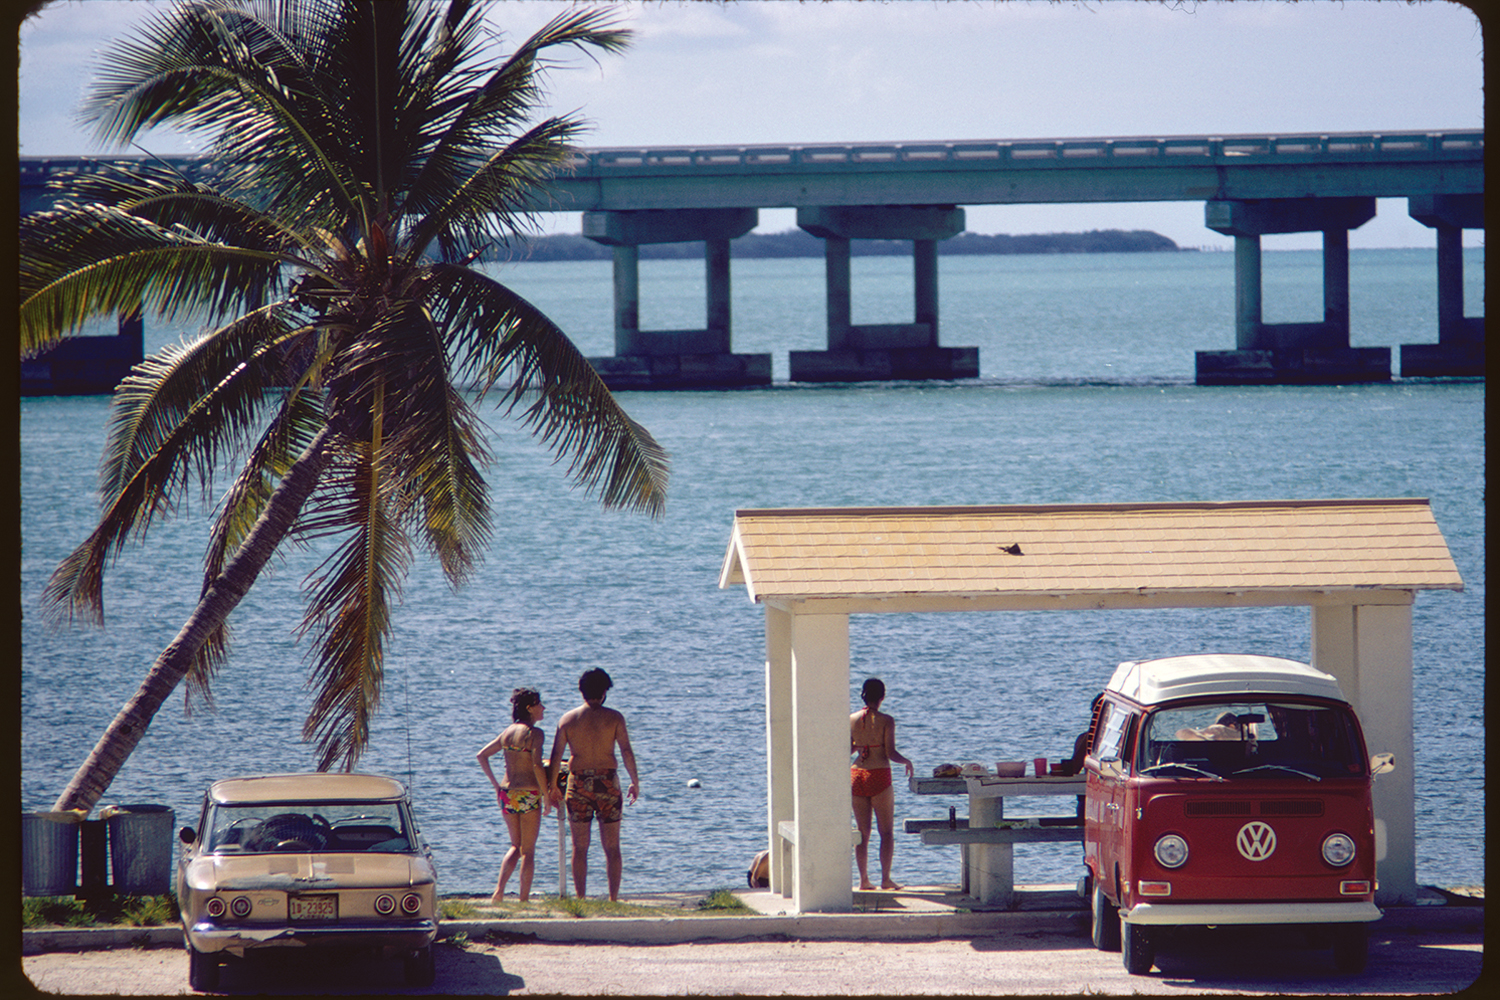 At Bahia Honda State Park, on Bahia Honda Key, Florida, 1973.